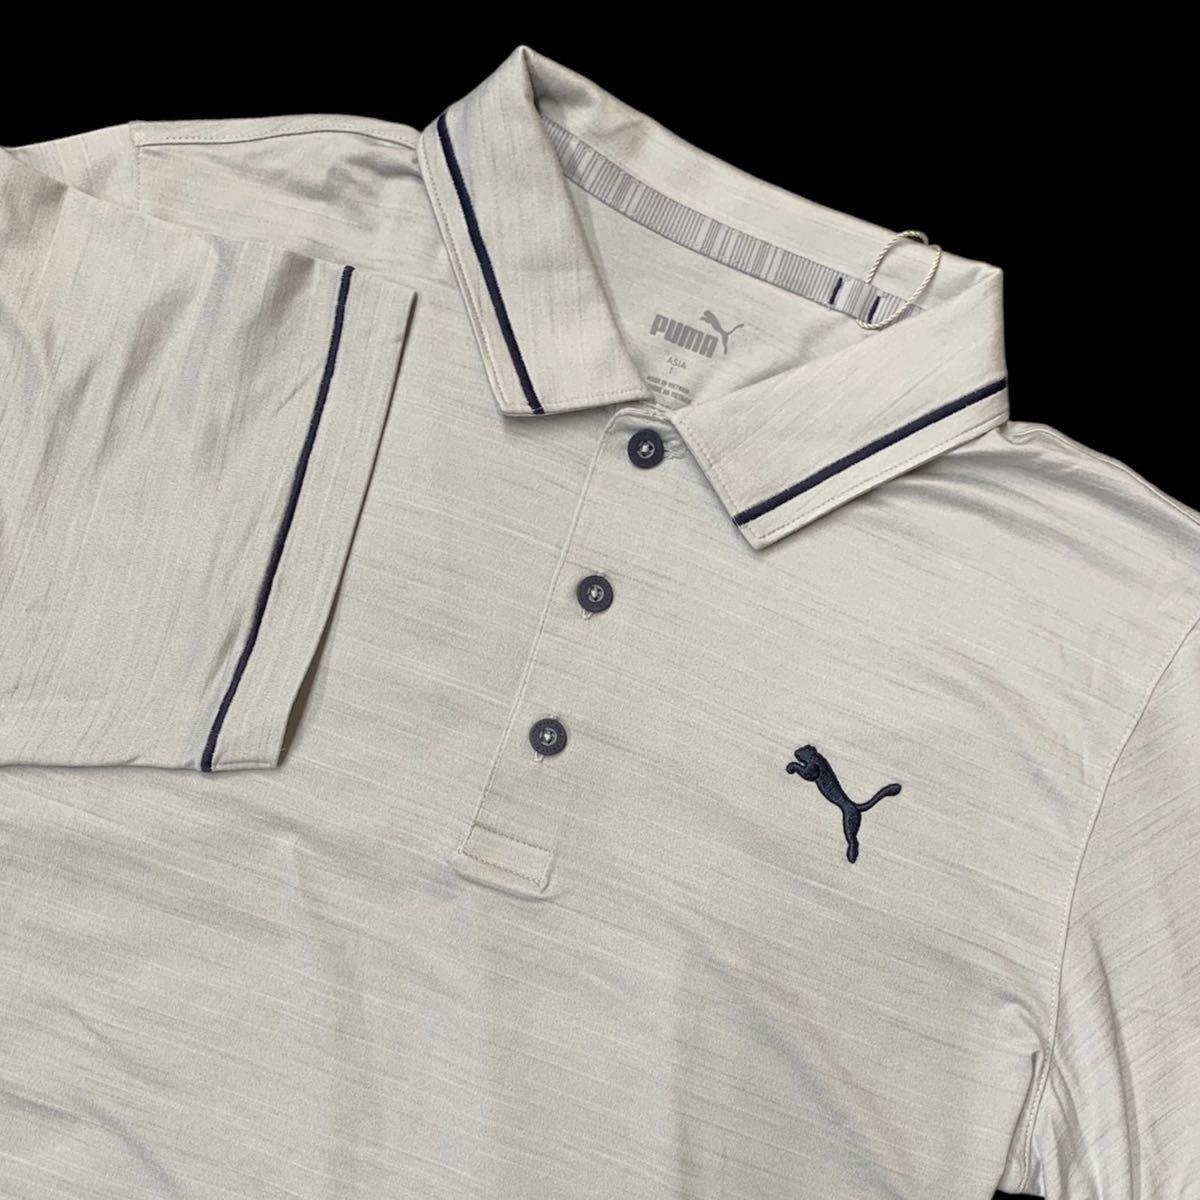  Puma XXL Golf рубашка-поло с коротким рукавом Heather светло-серый обычная цена 10890 иен Short рукав dry GOLF